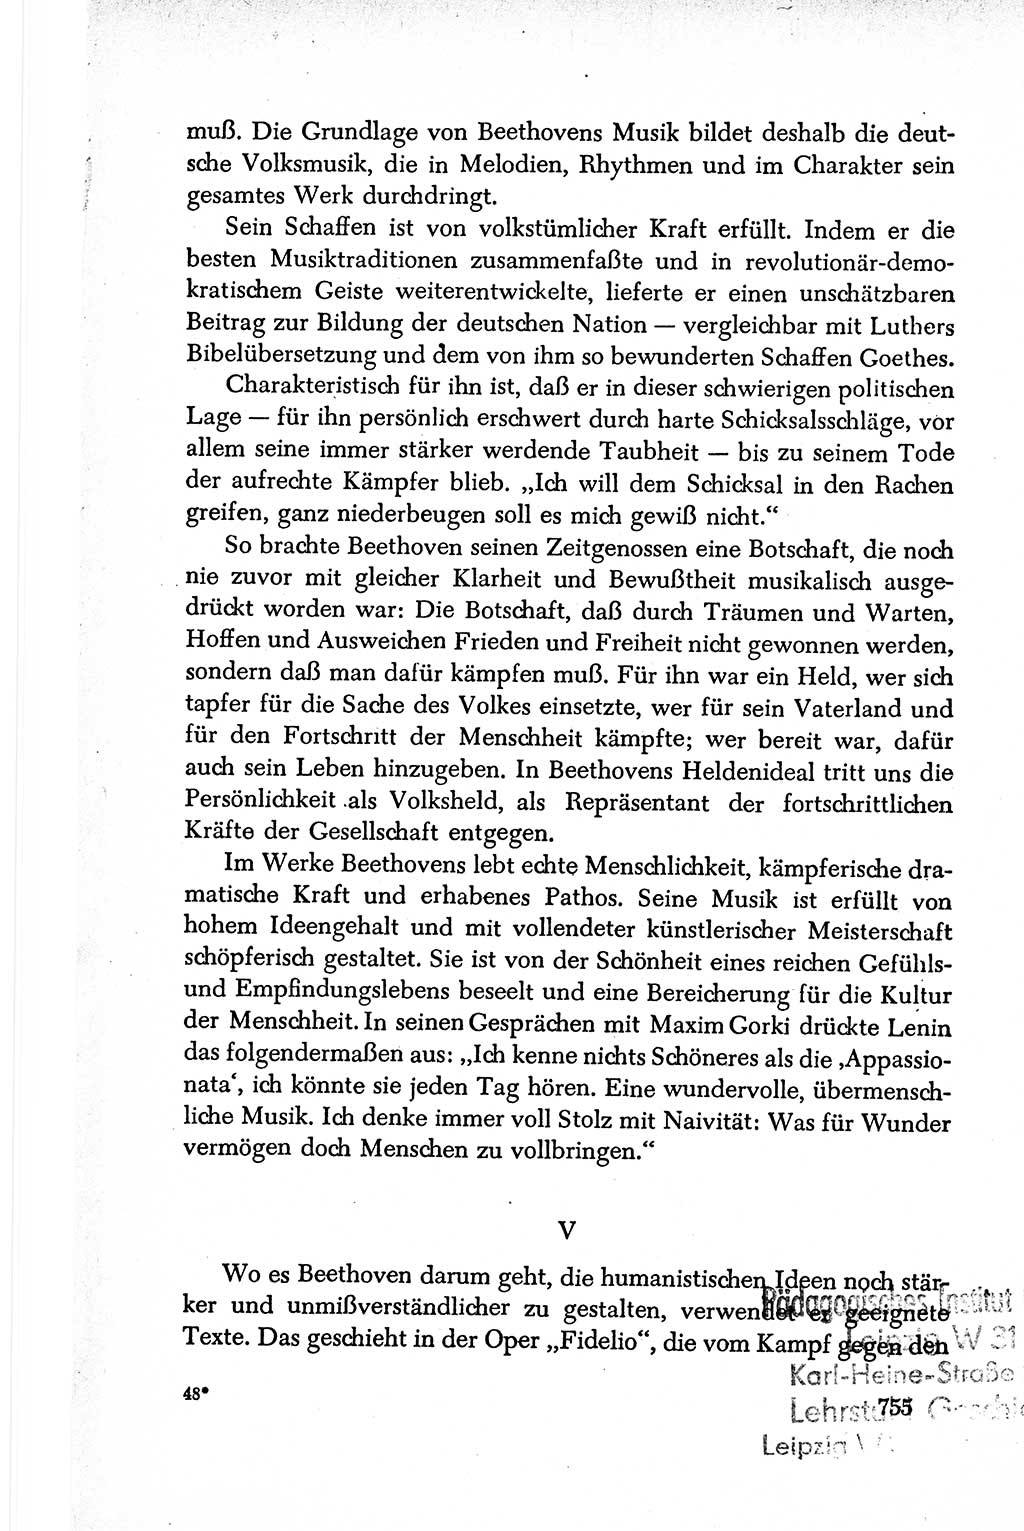 Dokumente der Sozialistischen Einheitspartei Deutschlands (SED) [Deutsche Demokratische Republik (DDR)] 1950-1952, Seite 755 (Dok. SED DDR 1950-1952, S. 755)